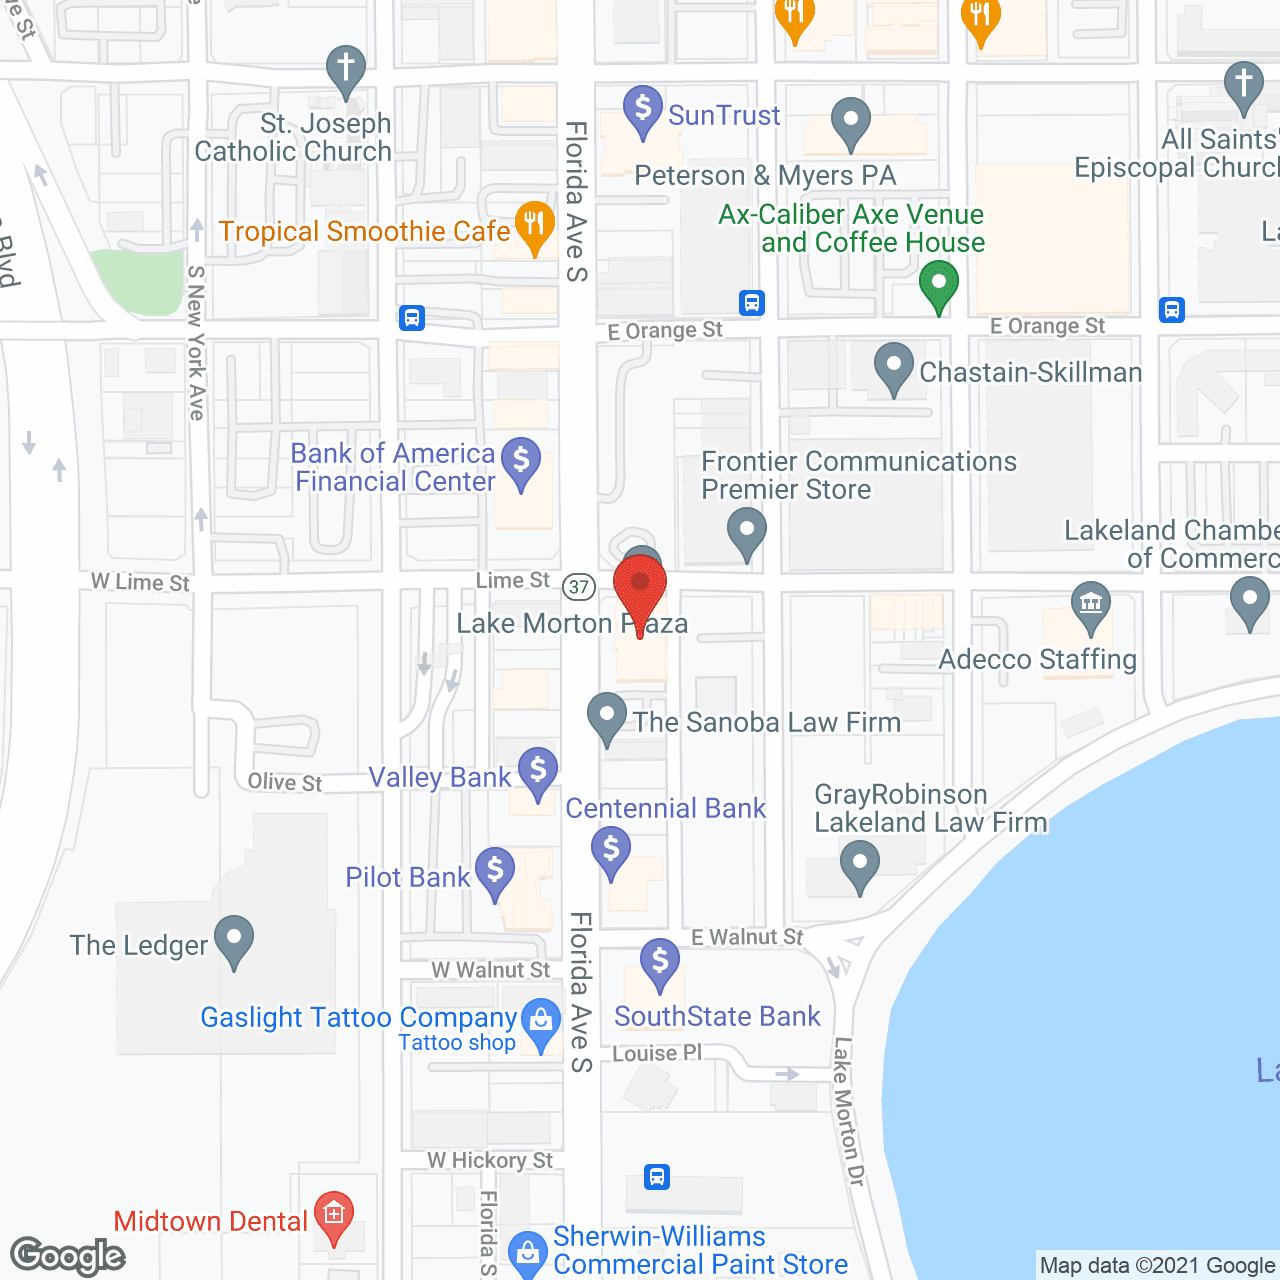 Lake Morton Plaza in google map